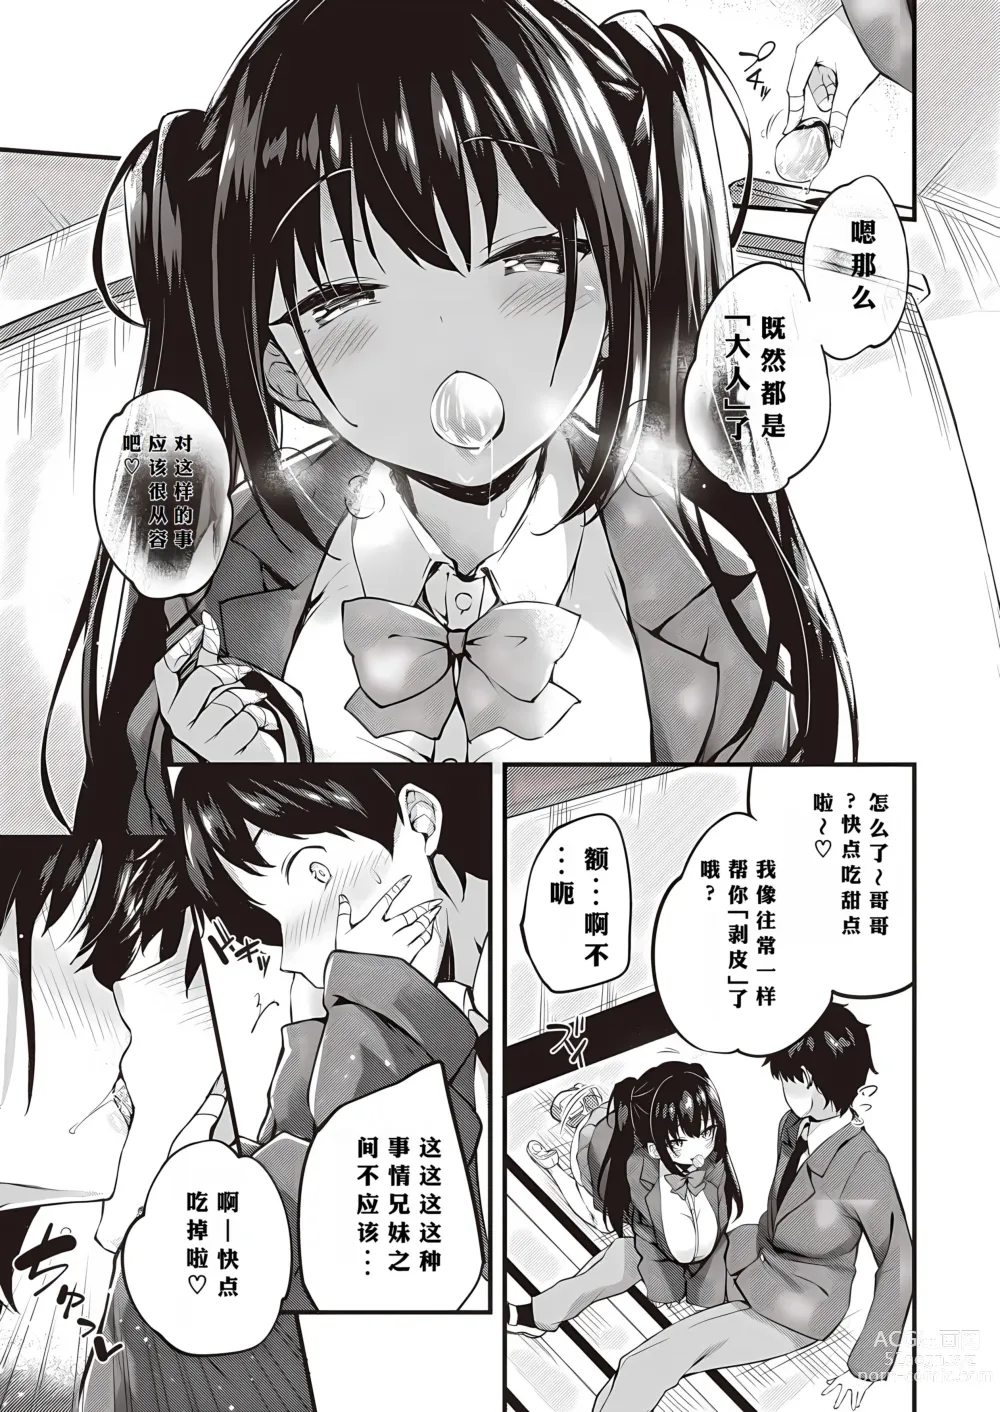 Page 5 of manga Oshiete Ageru + Motto Oshiete Ageru